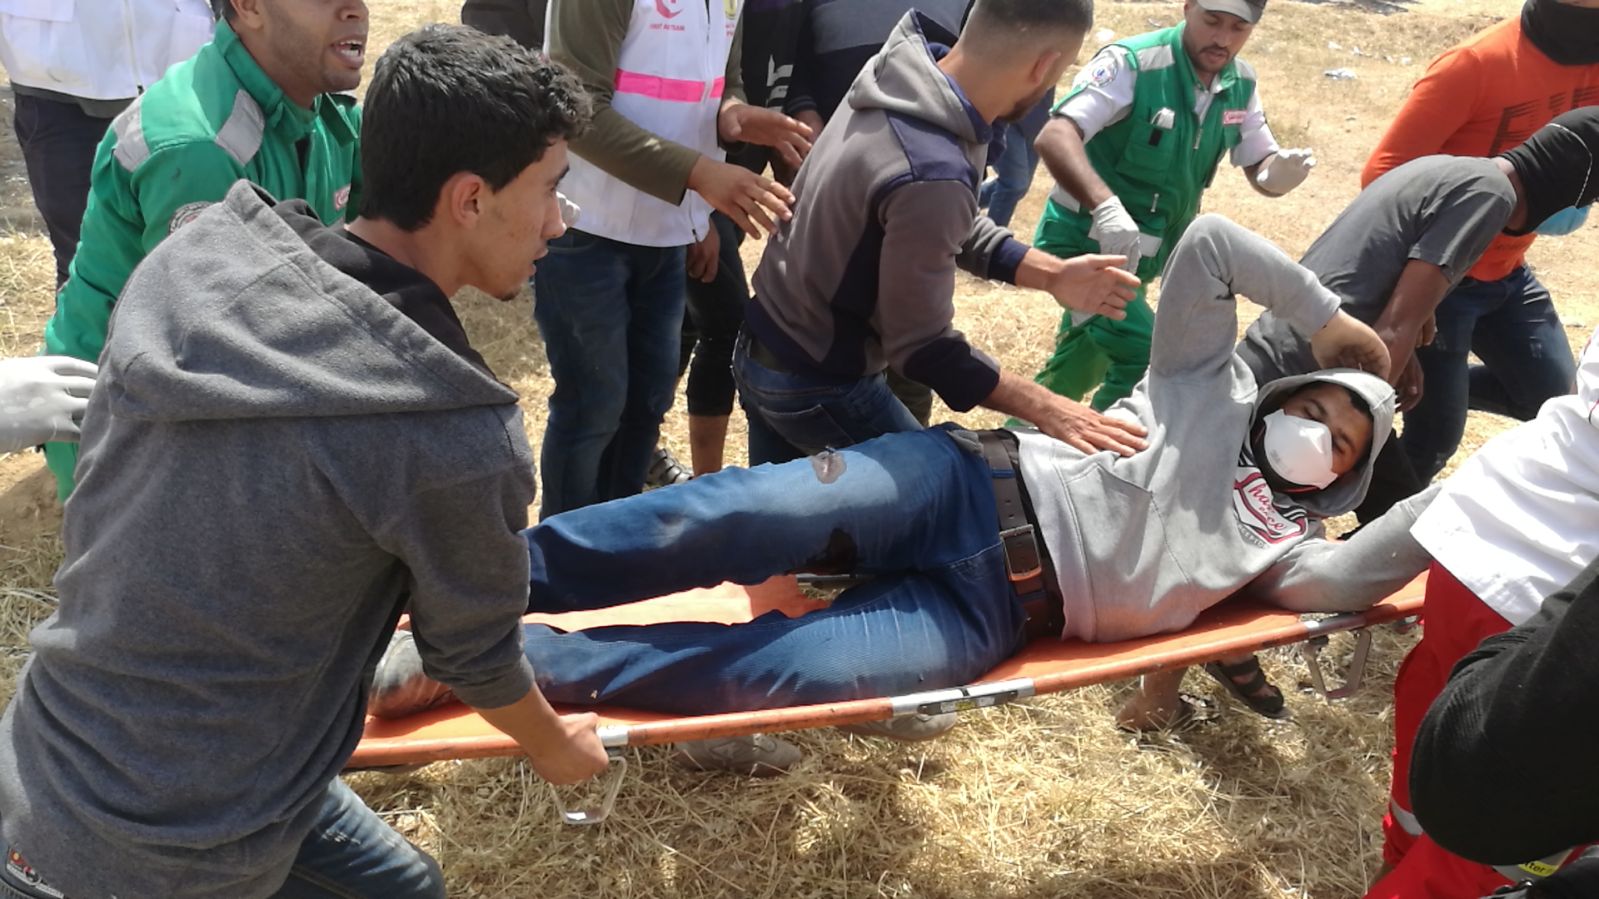 العفو الدولية تطالب بوضع حد لاستخدام القوة ضد المتظاهرين بغزة